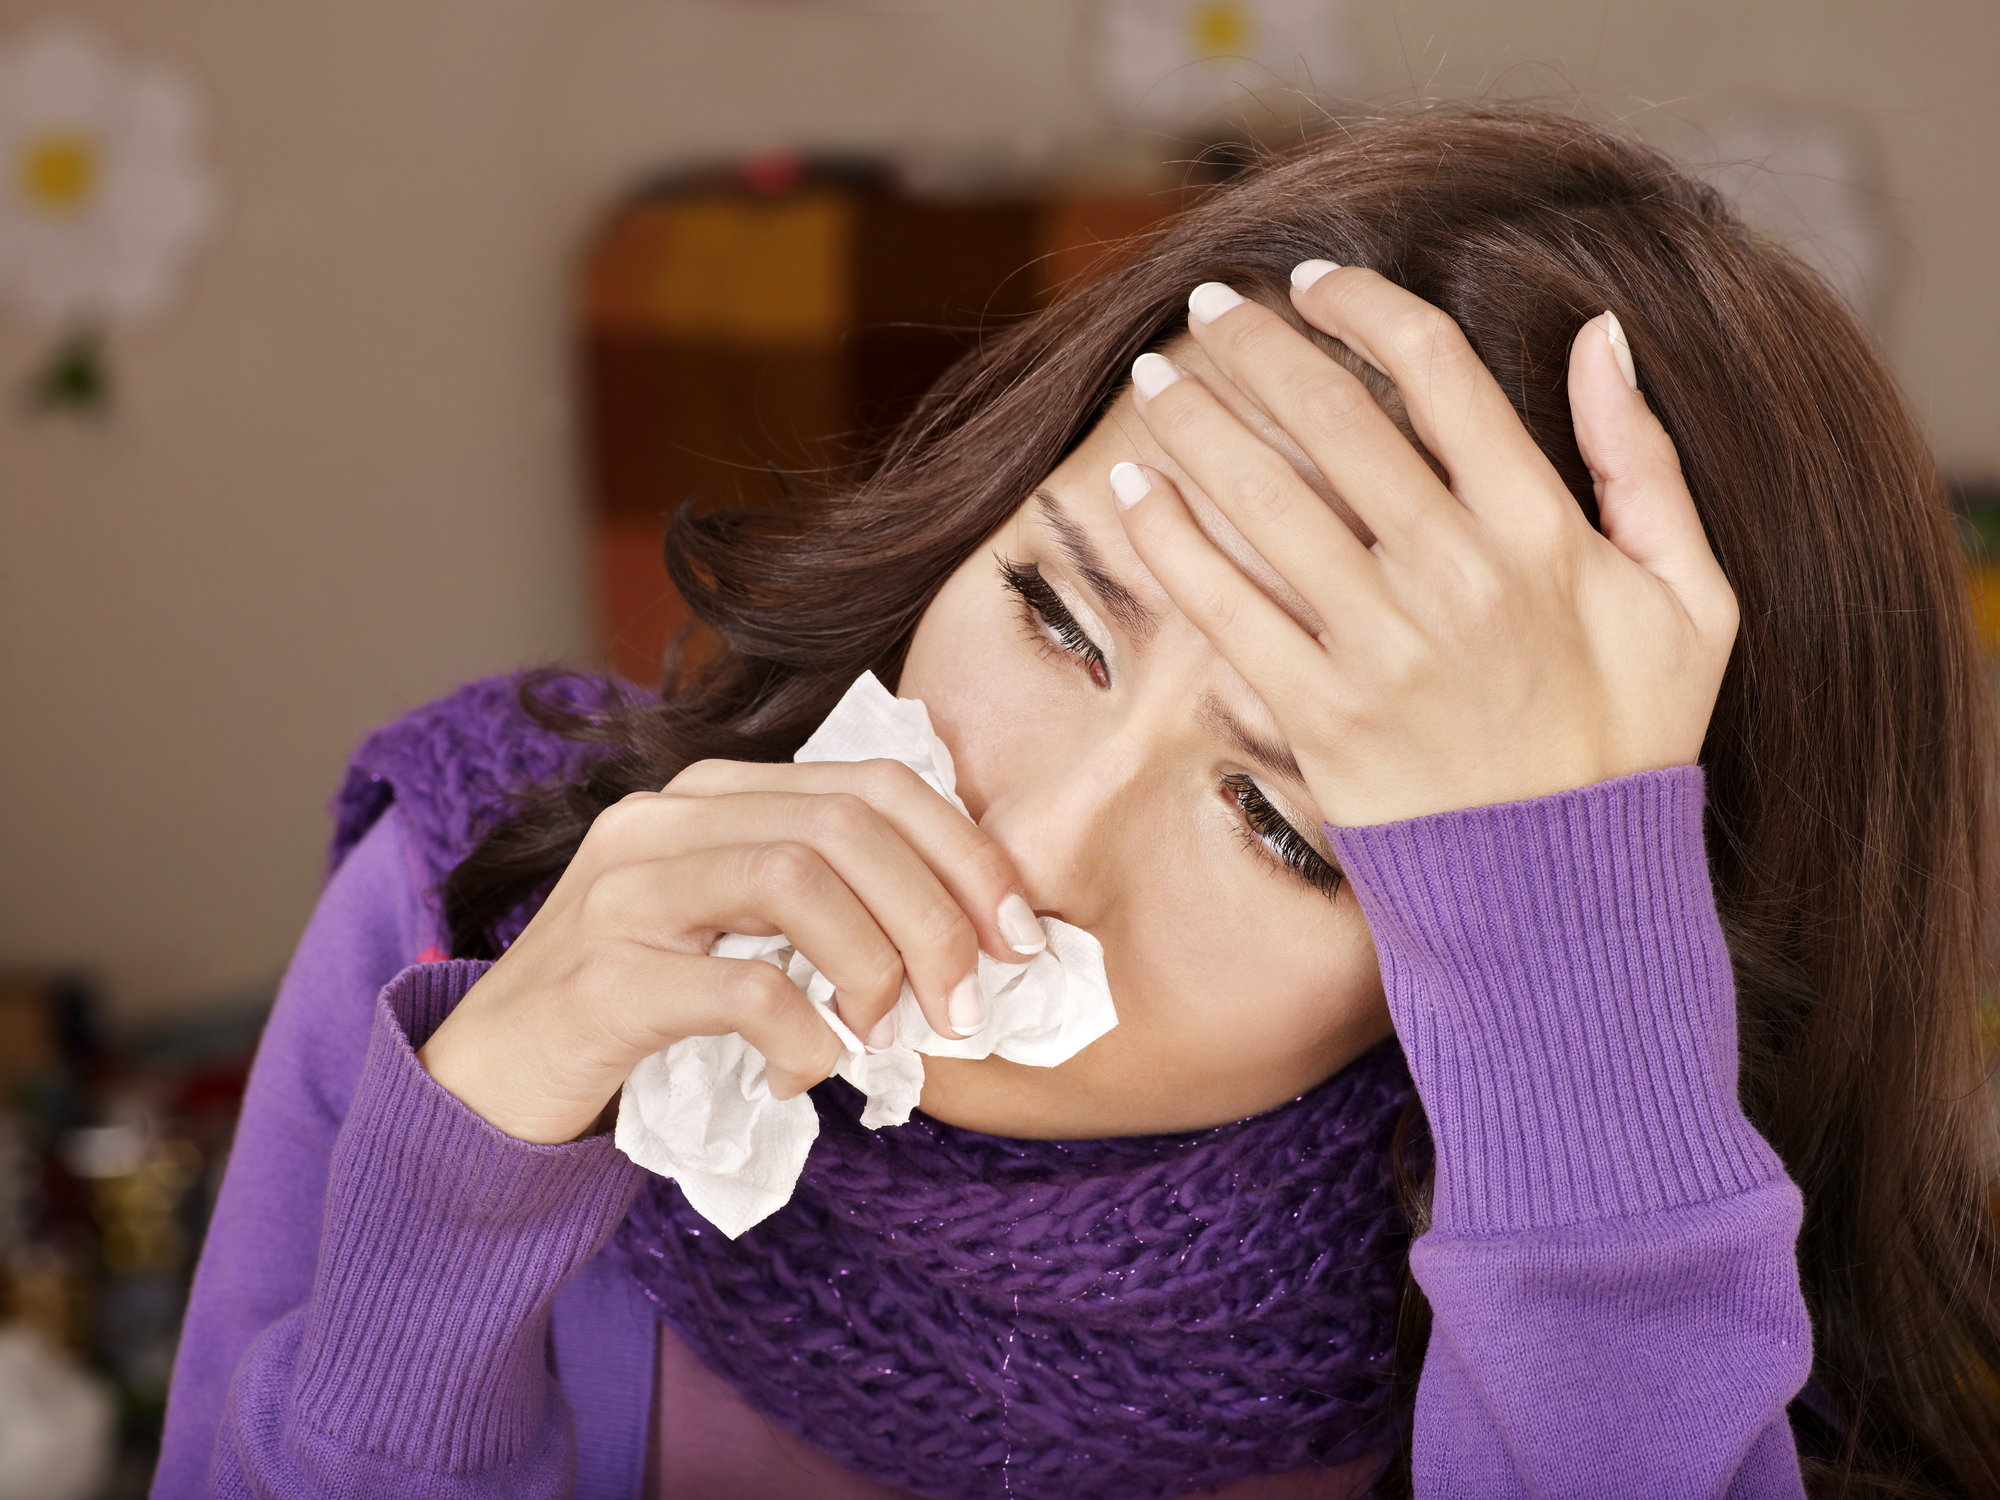 Krok pierwszy – eliminacja alergenów z otoczenia